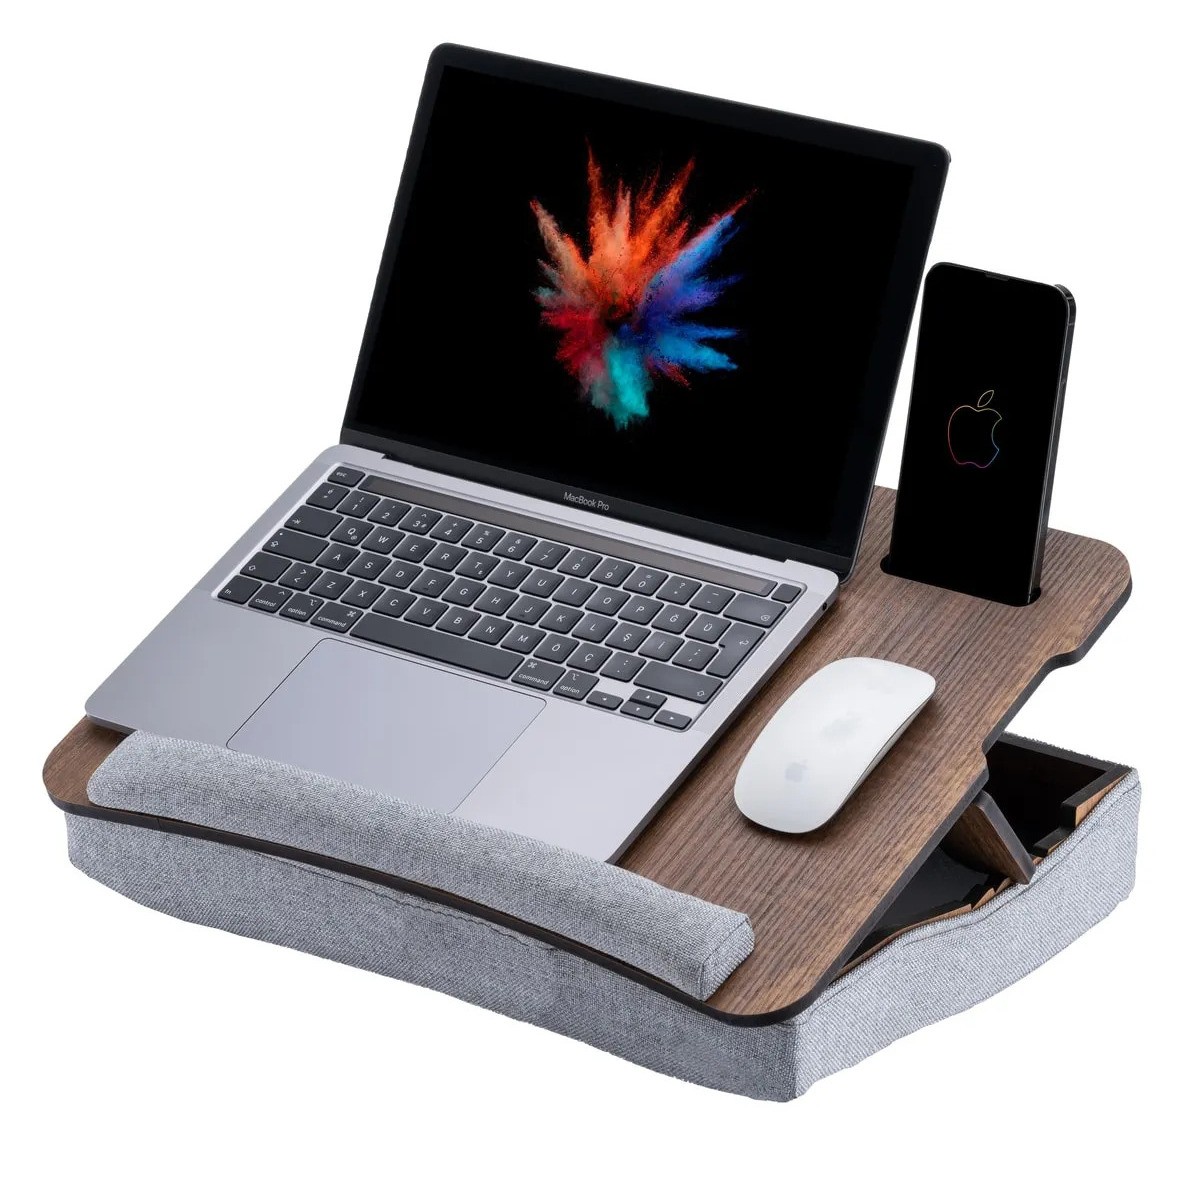 LS031 Minderli Eğim Ayarlanabilir 13" ve 15.6" Laptop Sehpası Taşınabilir Telefon Bölmeli Masa